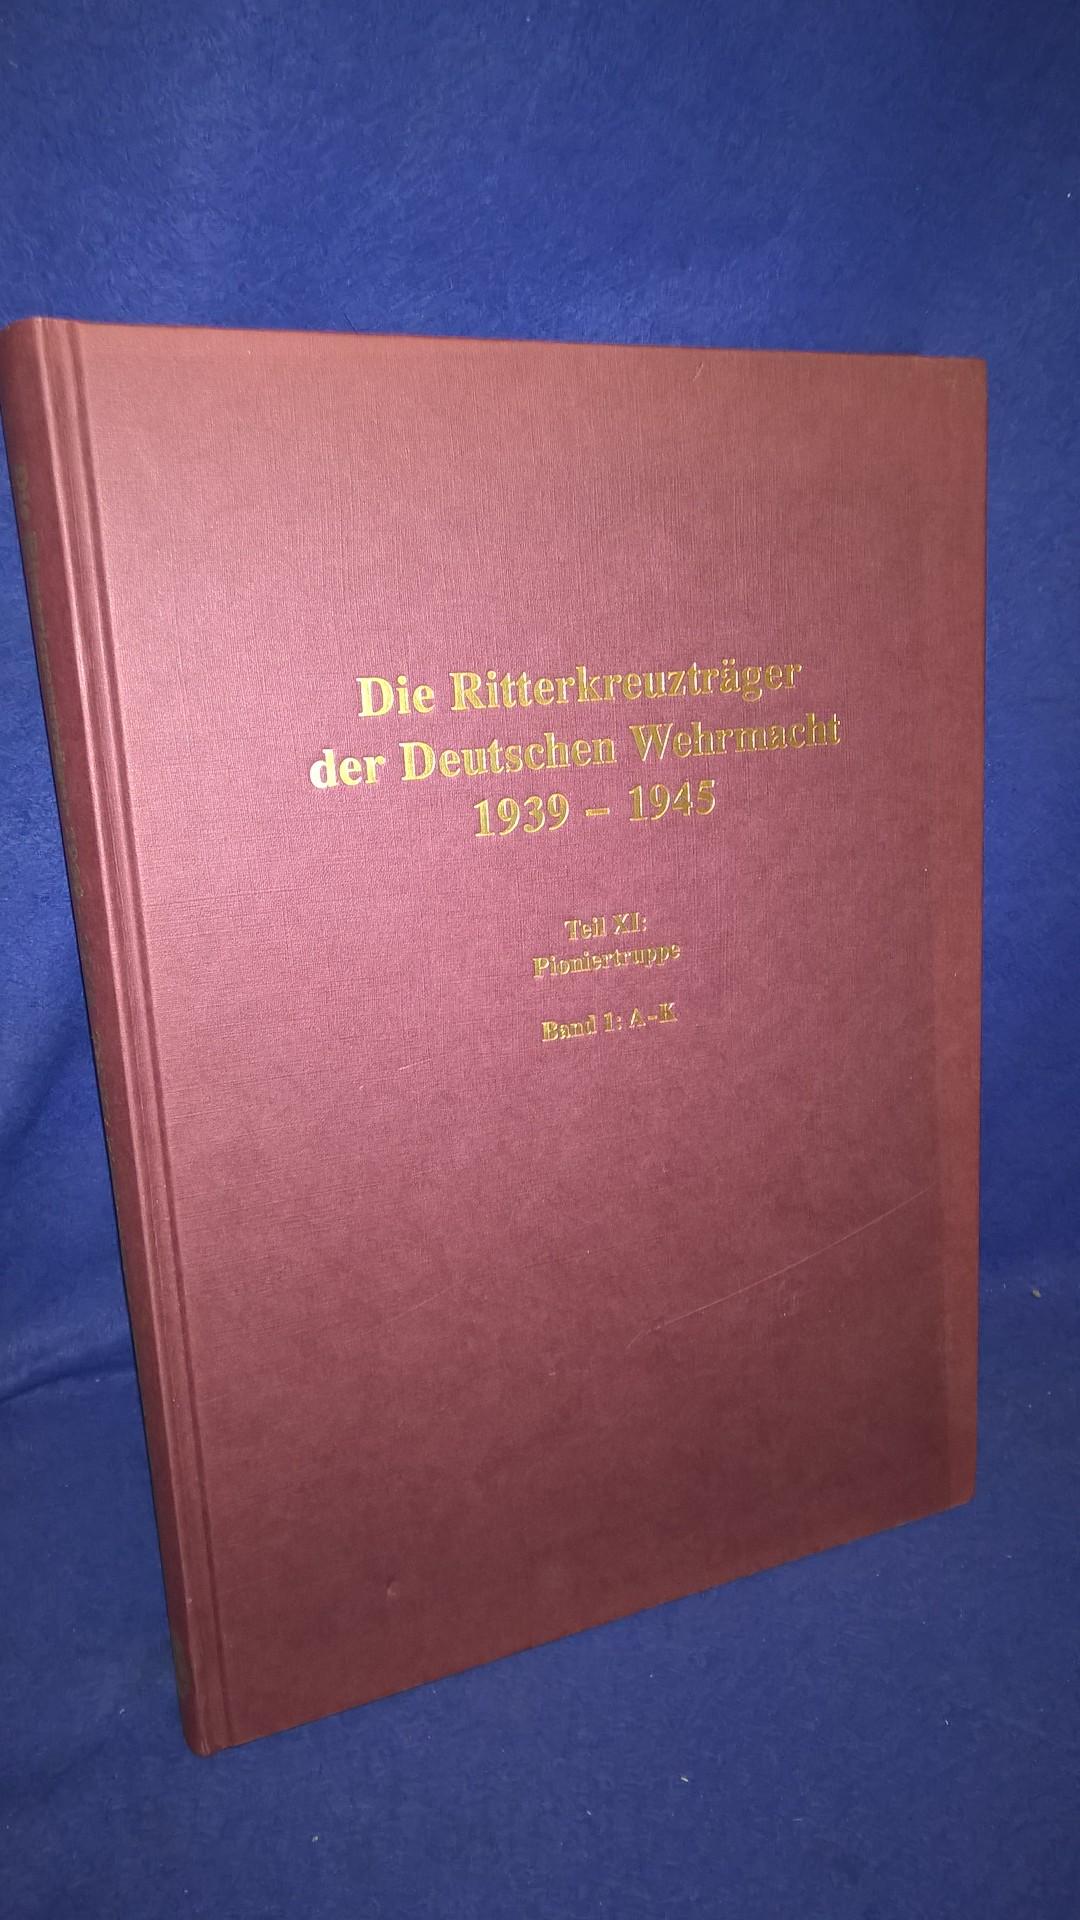 Die Ritterkreuzträger der Deutschen Wehrmacht 1939-1945 - Teil XI: Pioniertruppe Band 1: A-K.